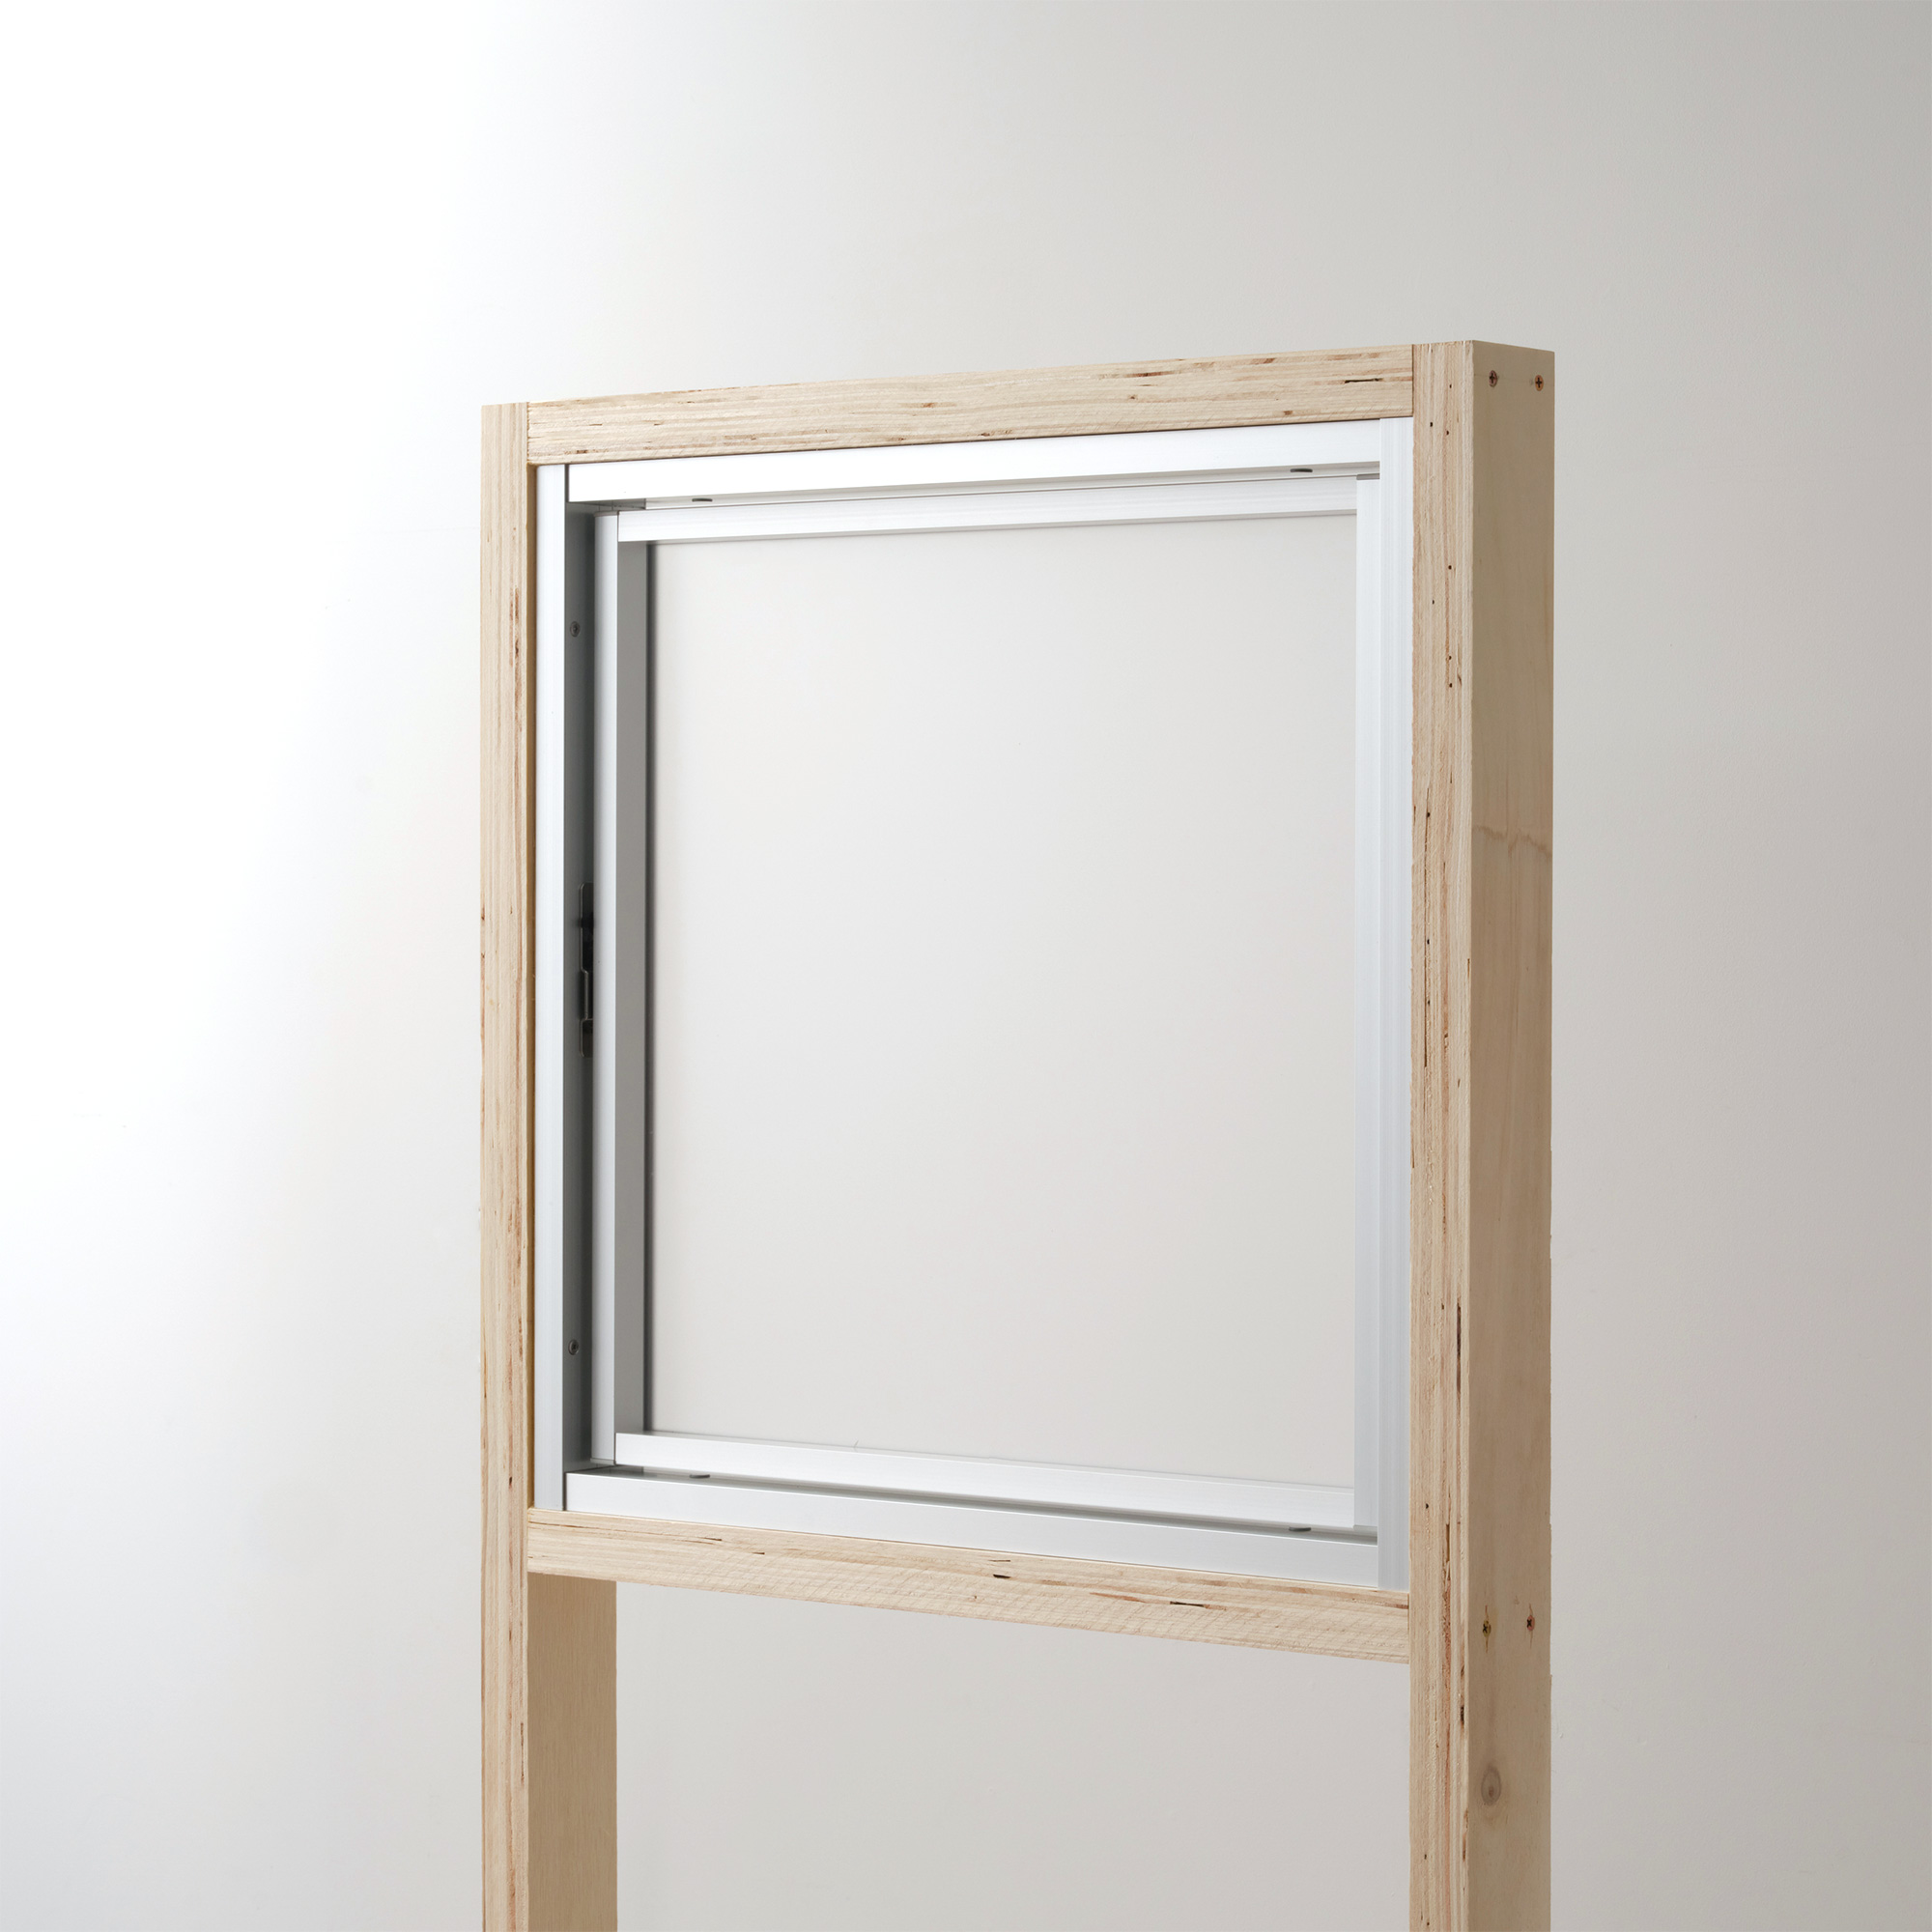 室内アルミサッシ 回転窓 シルバー ガラス DW-DR013-07-G201 回転窓 W500 H500 マット樹脂パネル